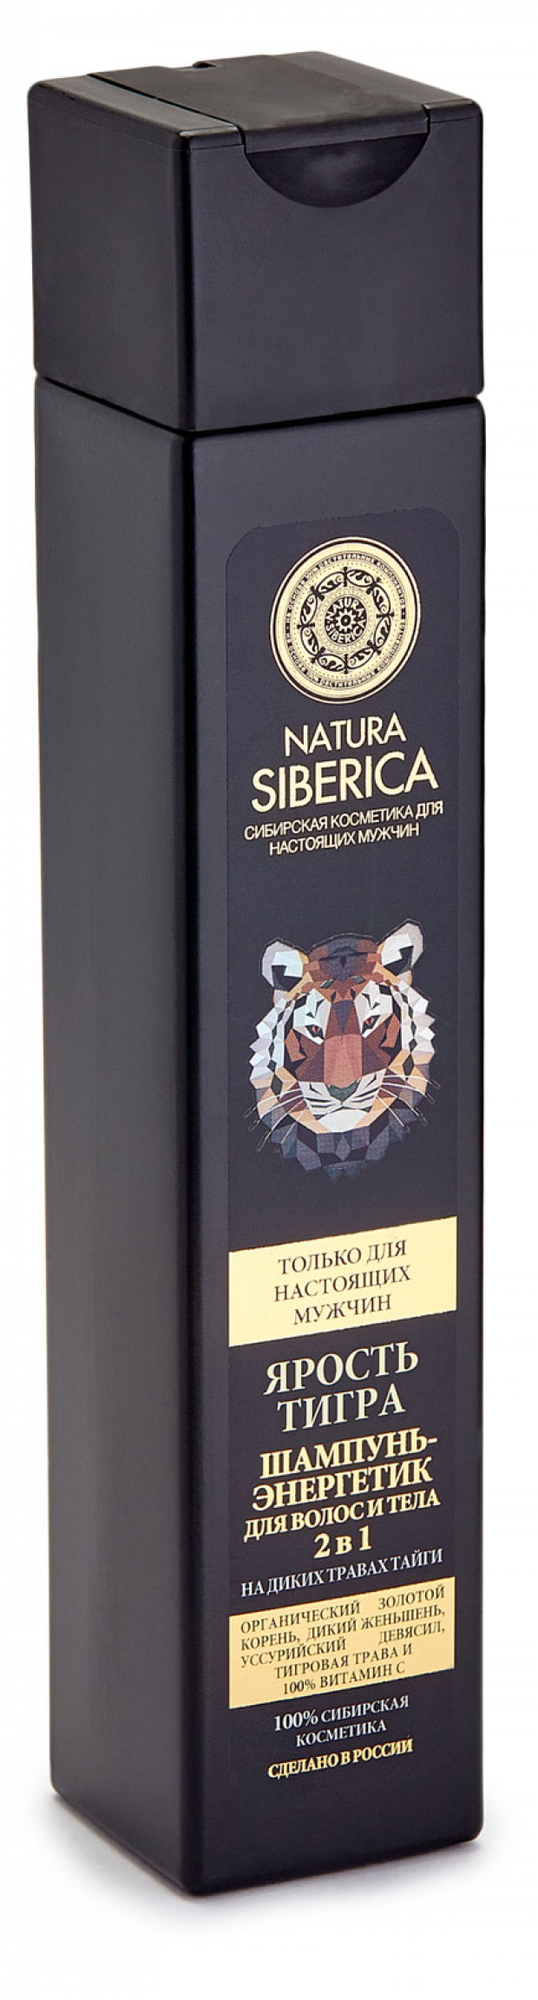 Natura Siberica Шампунь-энергетика для волос и тела 2в1 ярость тигра 250 мл (Natura Siberica, ) - фото №8